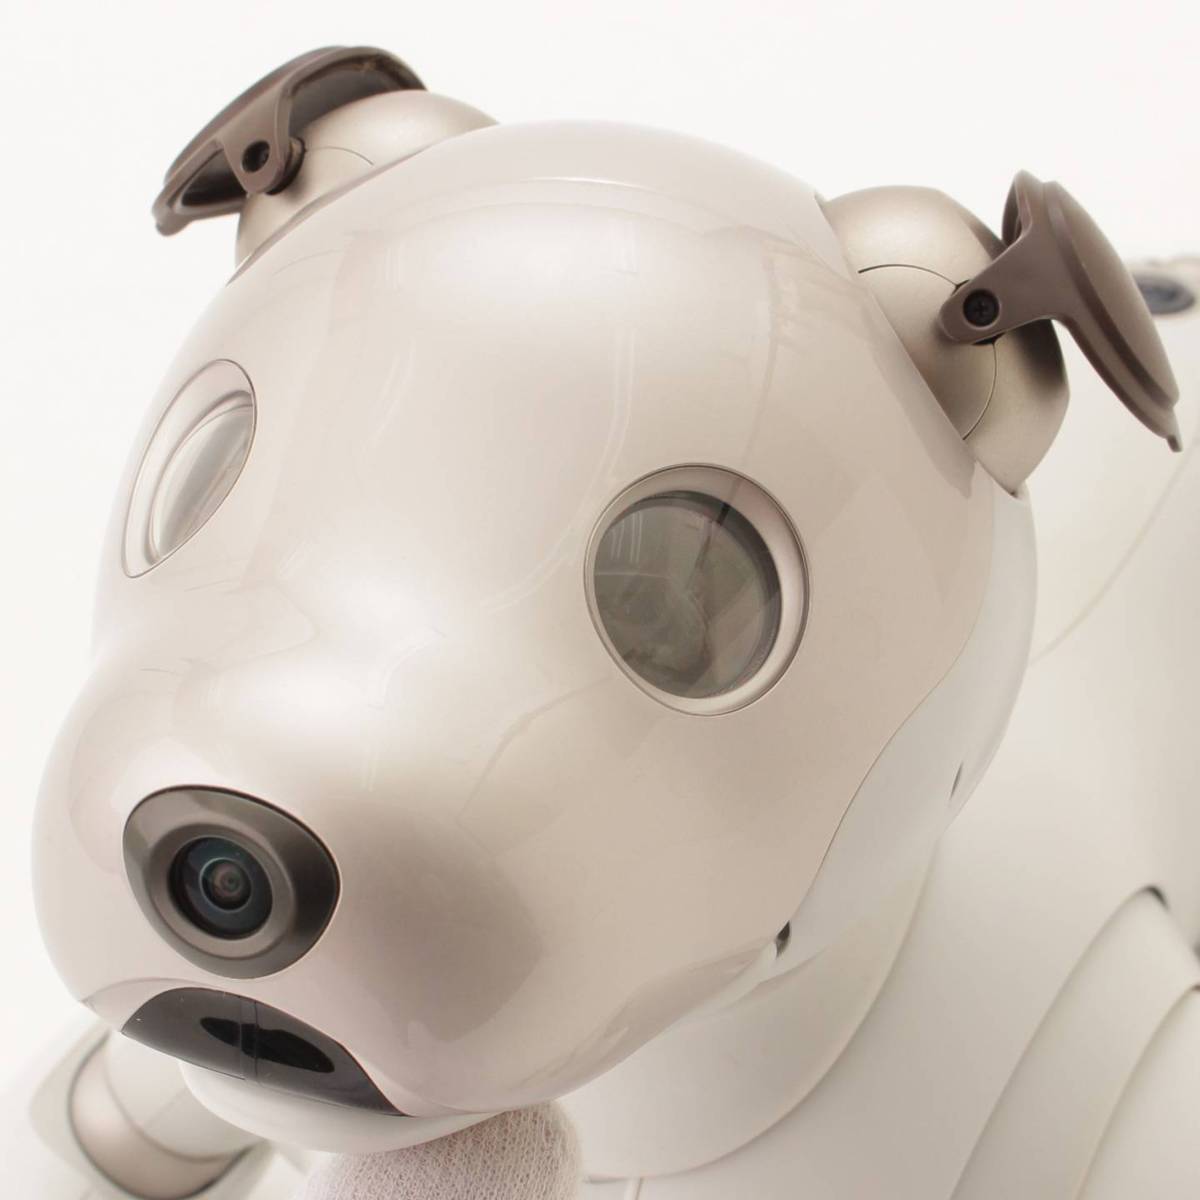 ソニー アイボ  犬 ペットロボット  ホワイト